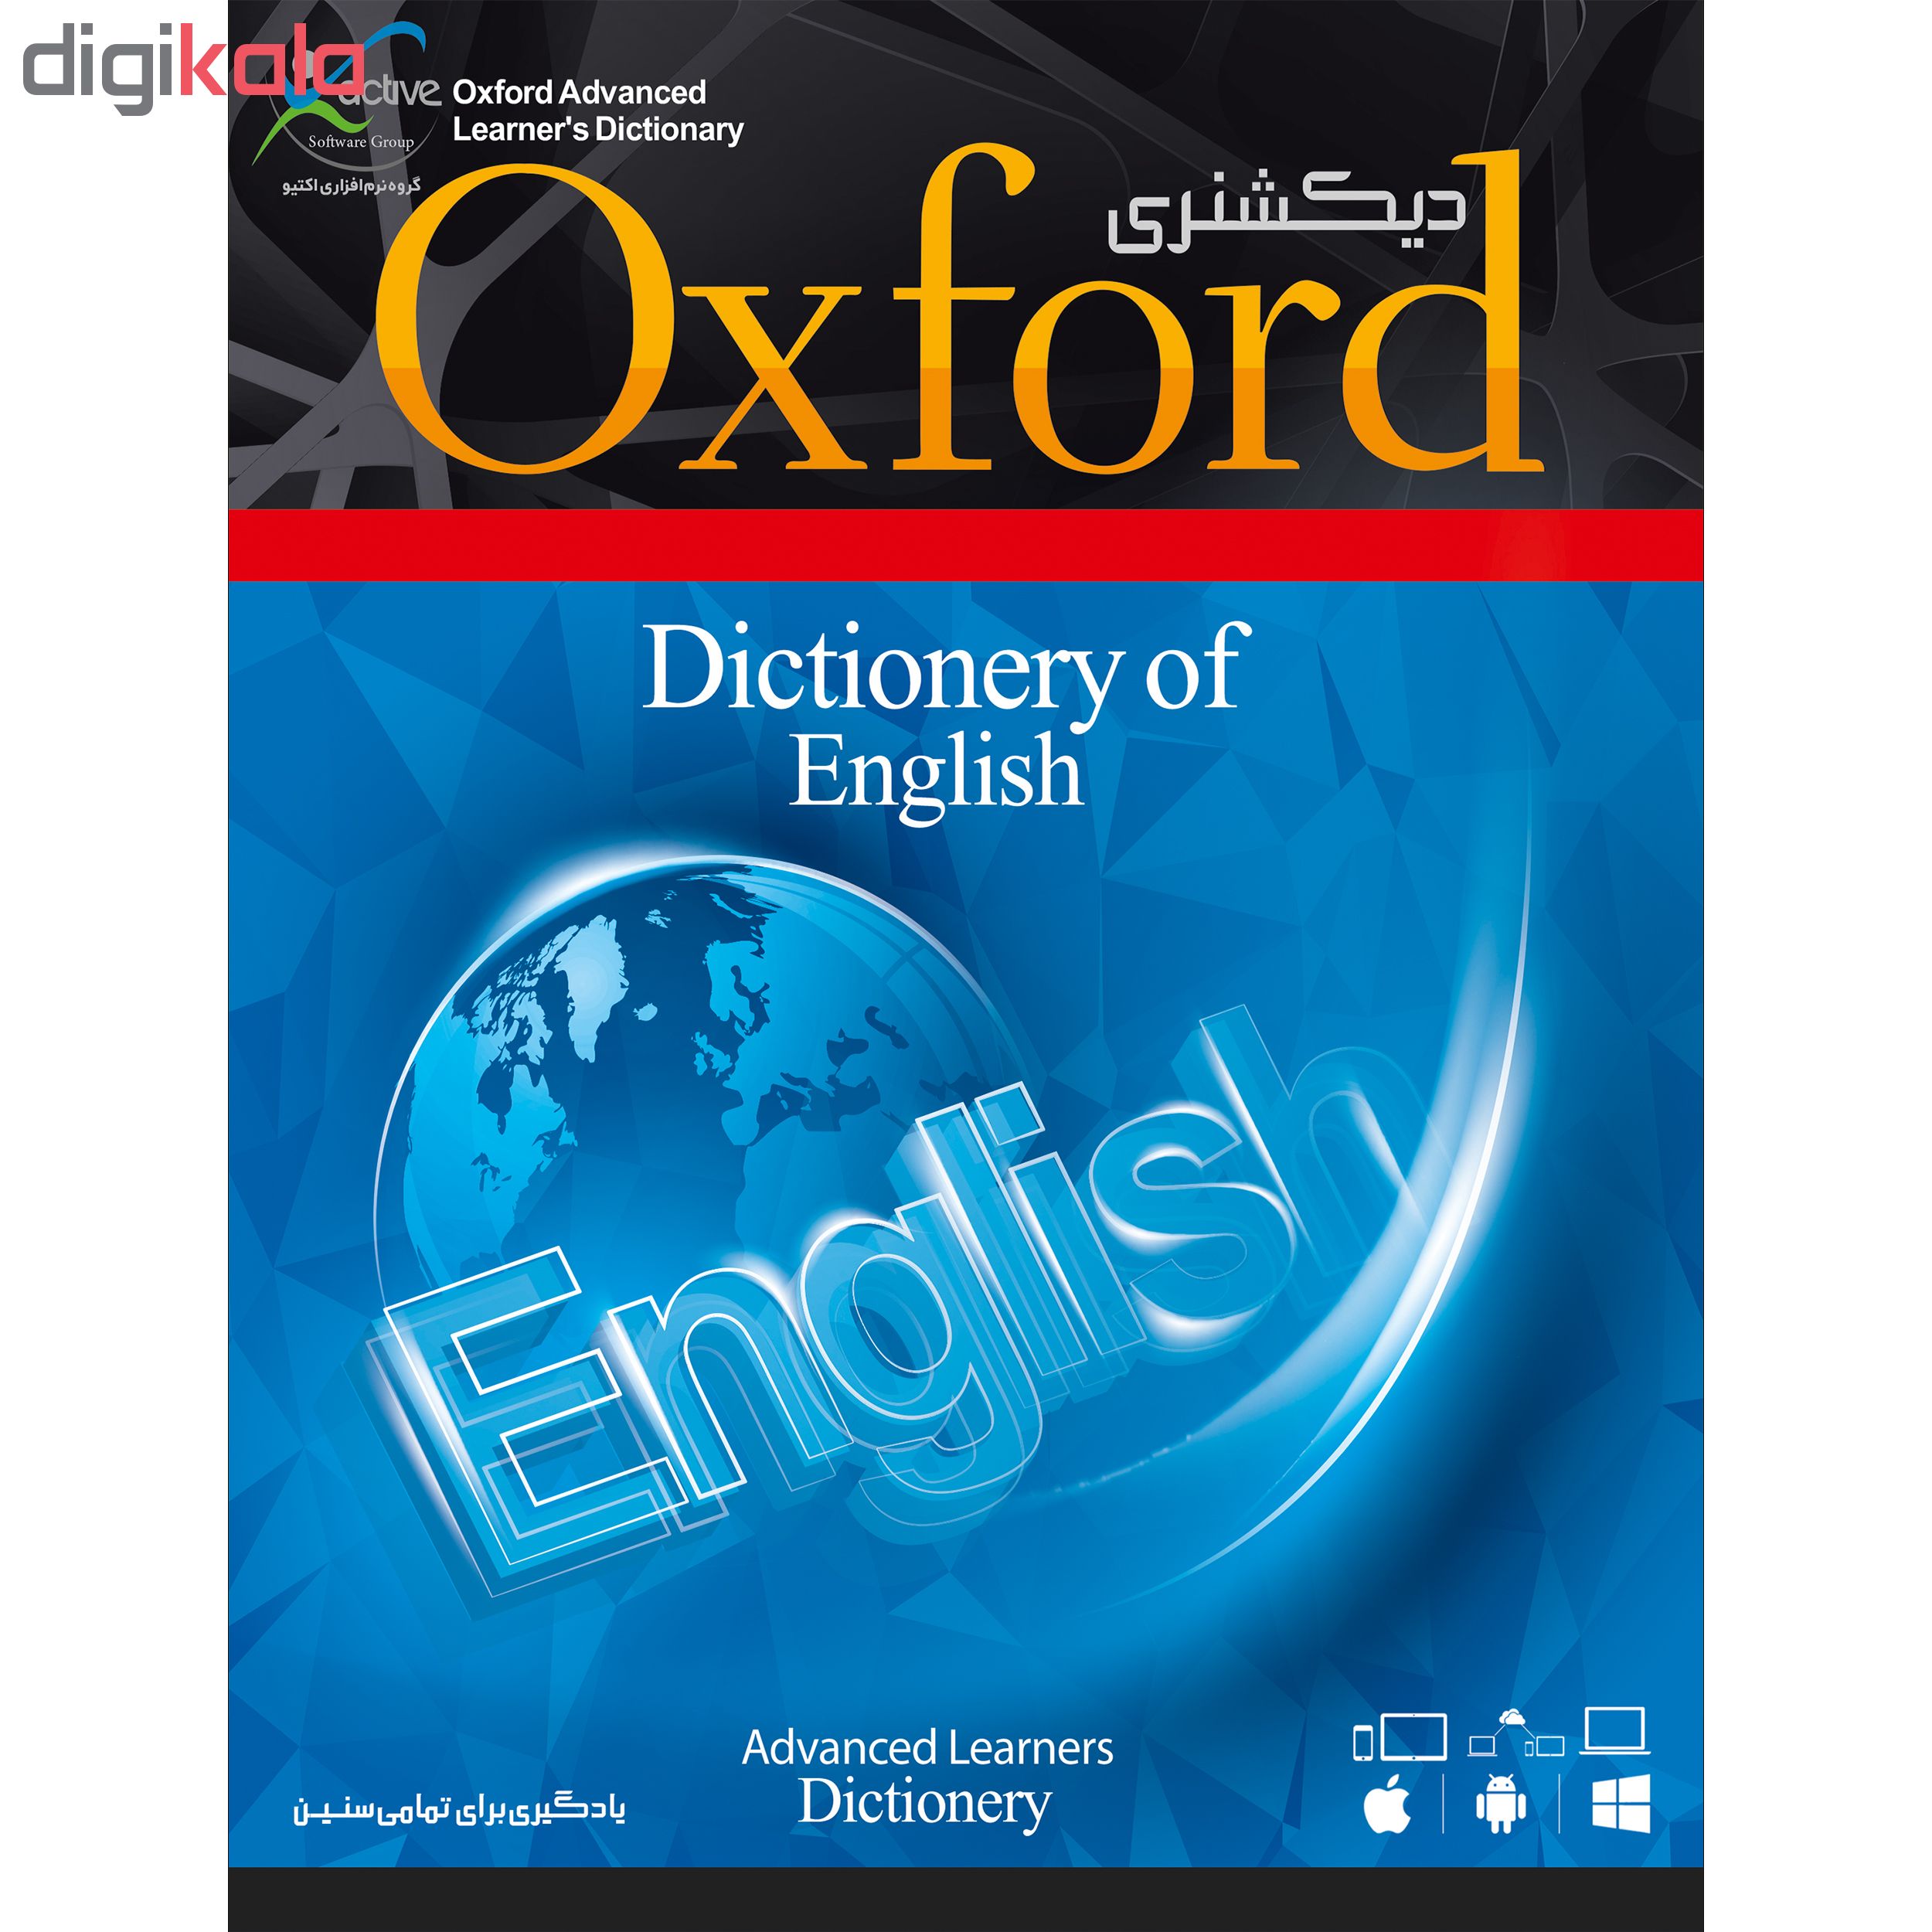 نرم افزار آموزشی زبان و دیکشنری LONGMAN نشر اکتیو به همراه نرم افزار آموزشی OXFORD نشر اکتیو 